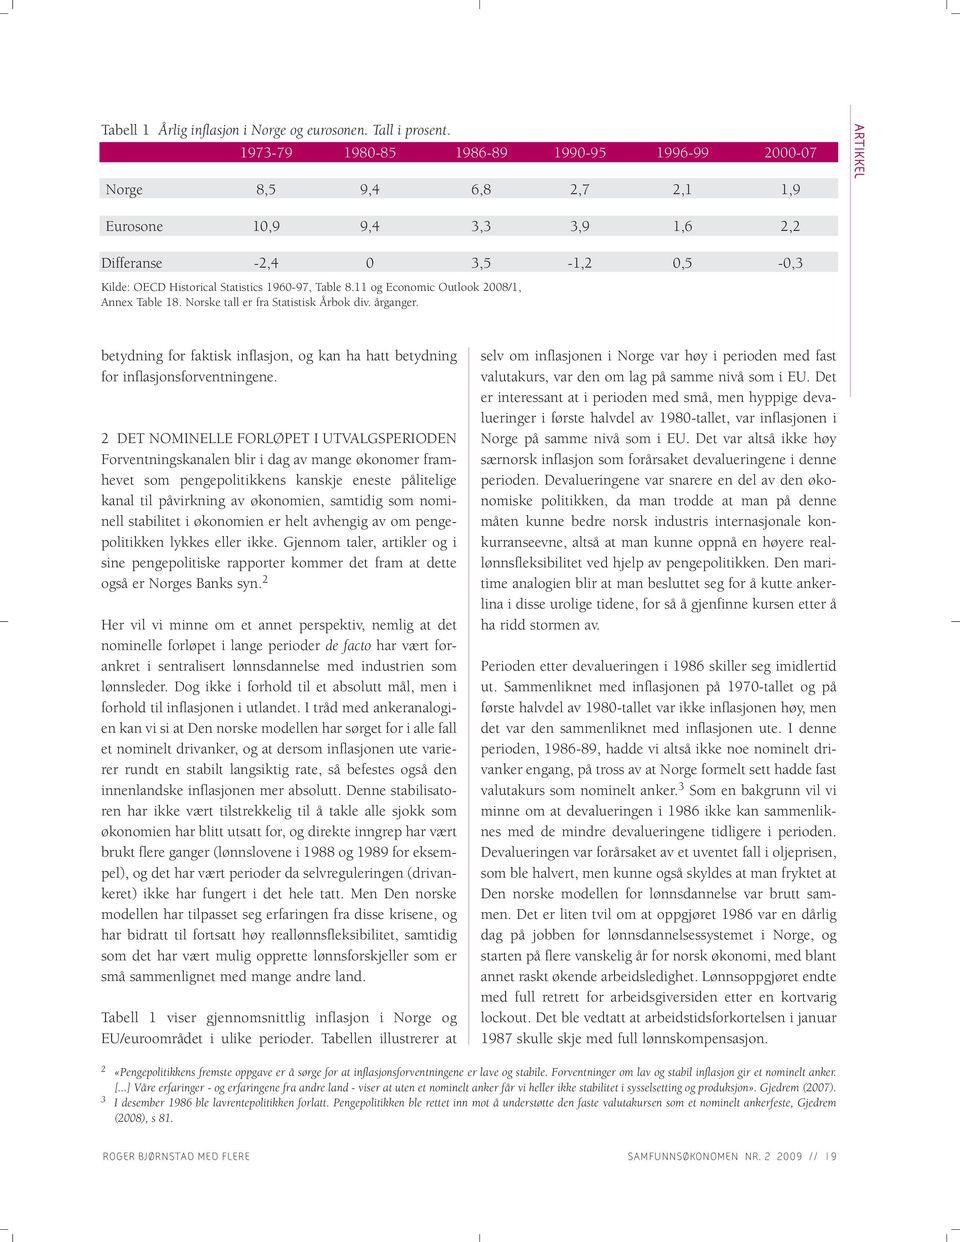 Table 8.11 og Economic Outlook 2008/1, Annex Table 18. Norske tall er fra Statistisk Årbok div. årganger. betydning for faktisk inflasjon, og kan ha hatt betydning for inflasjonsforventningene.